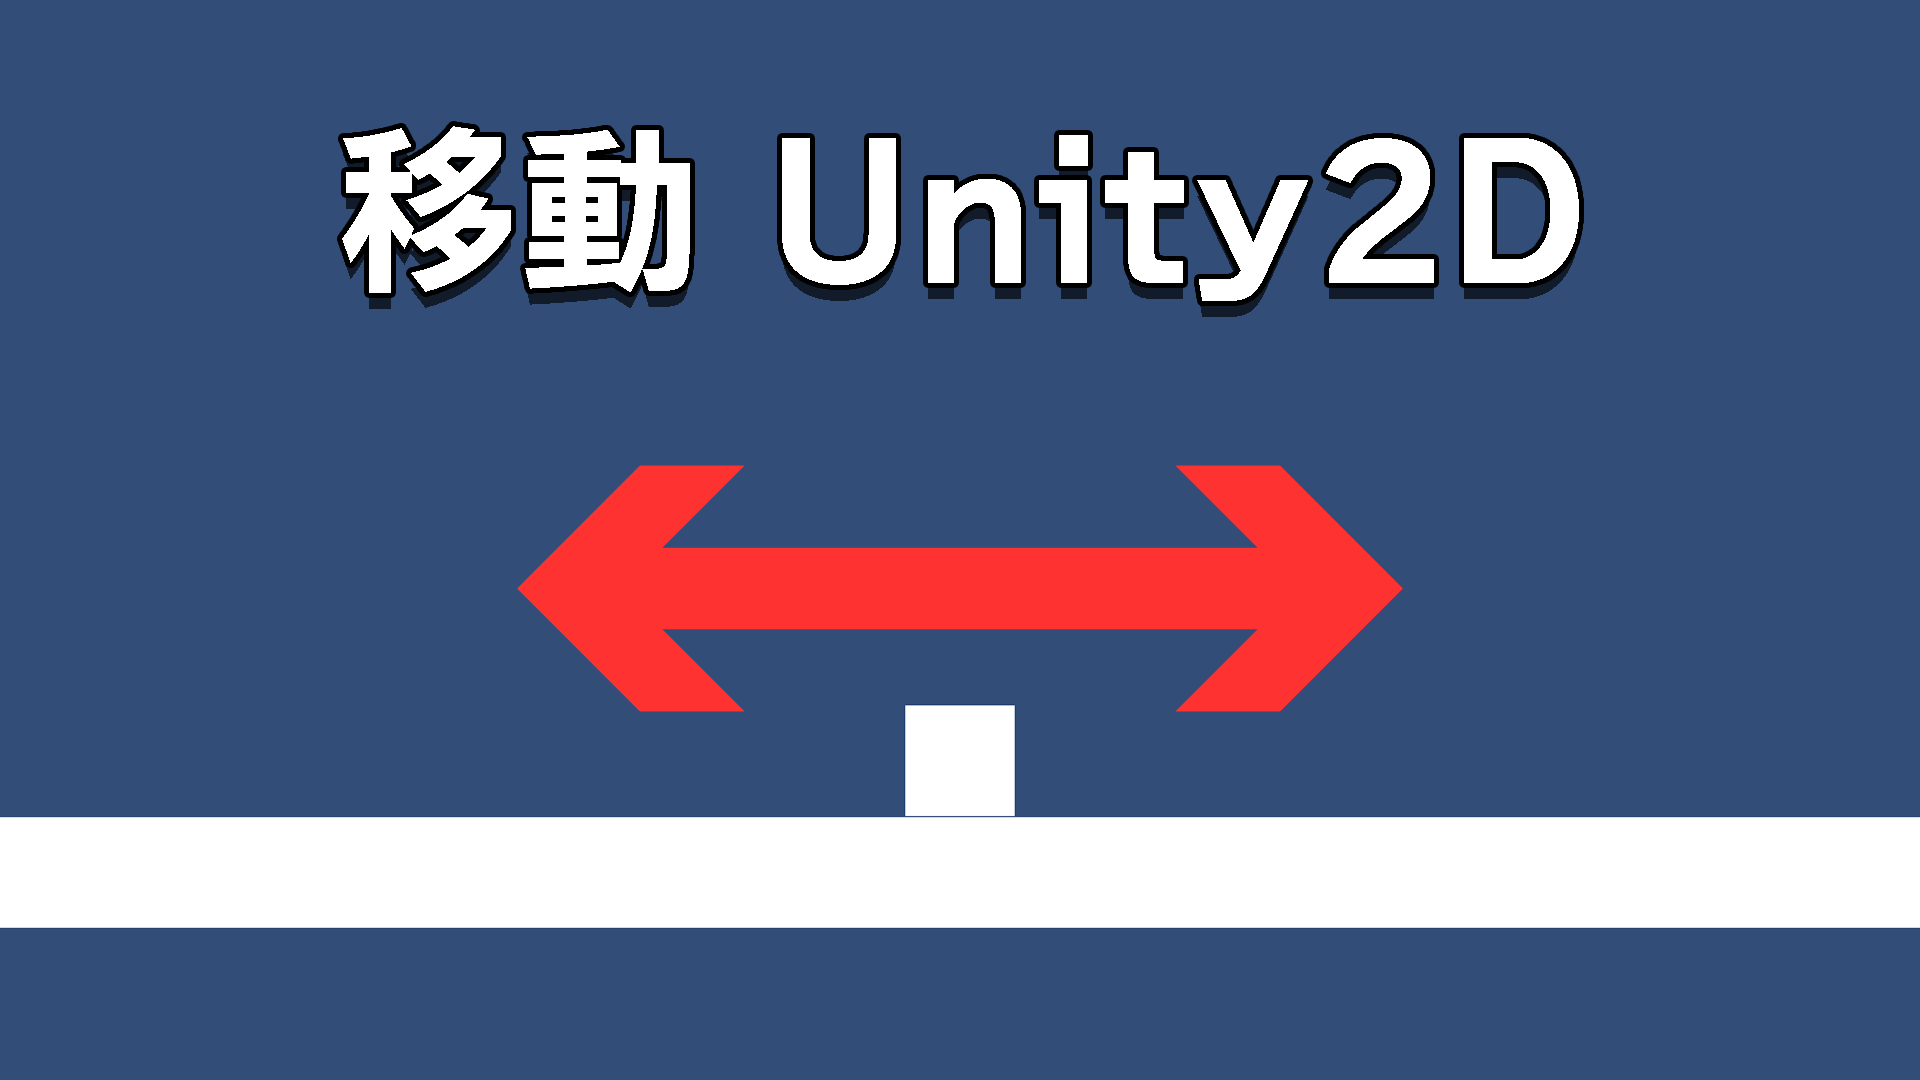 Unity2Dアクションゲームの制作講座「移動」の画像